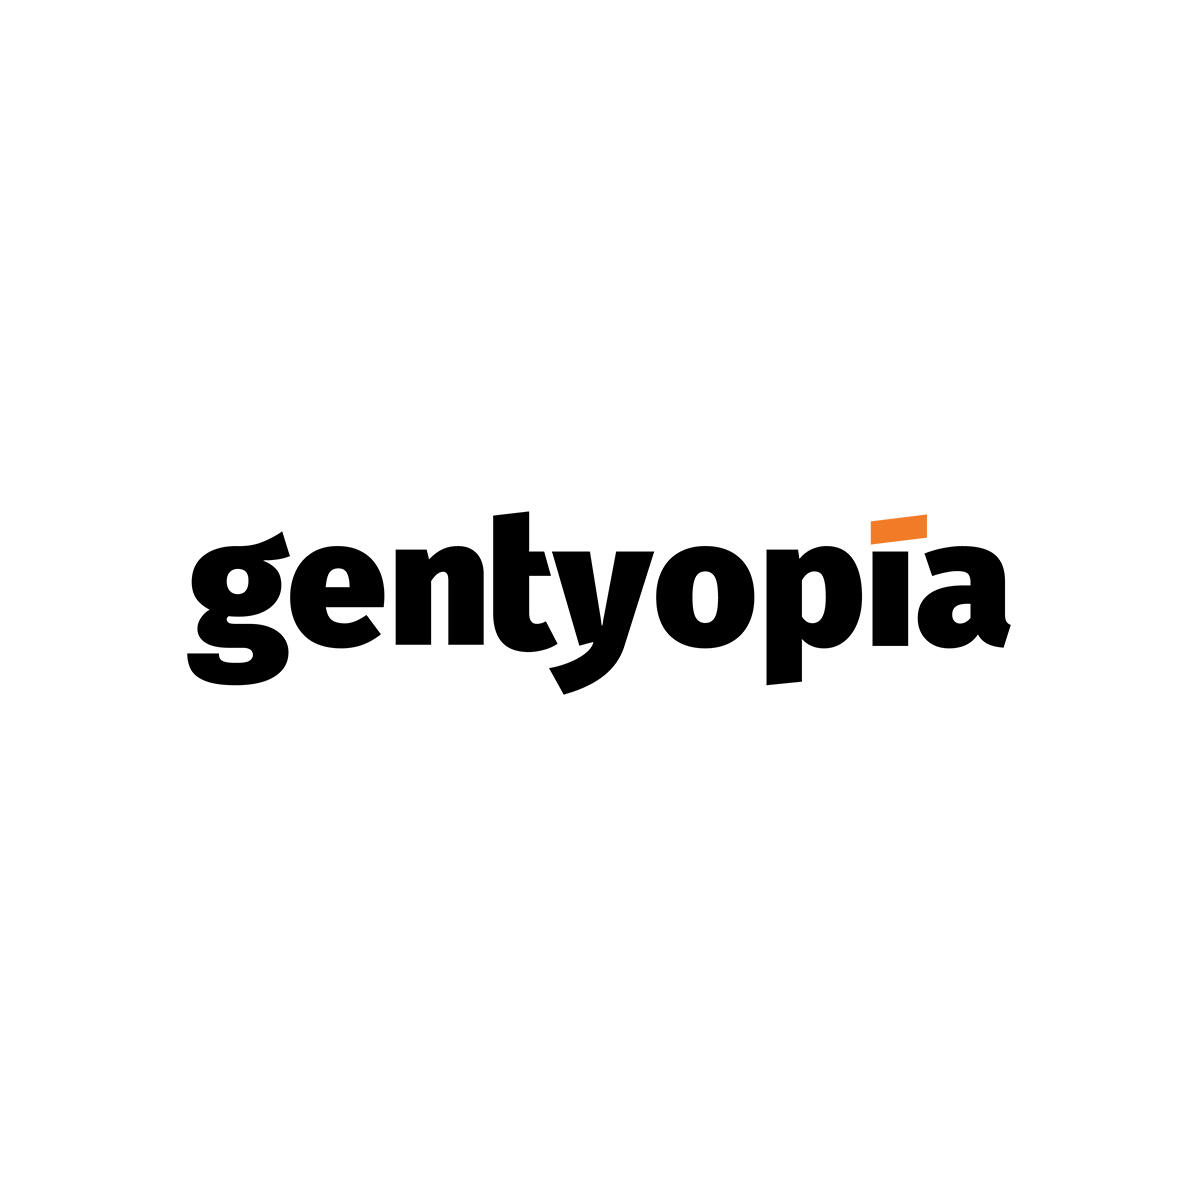 Gentyopía